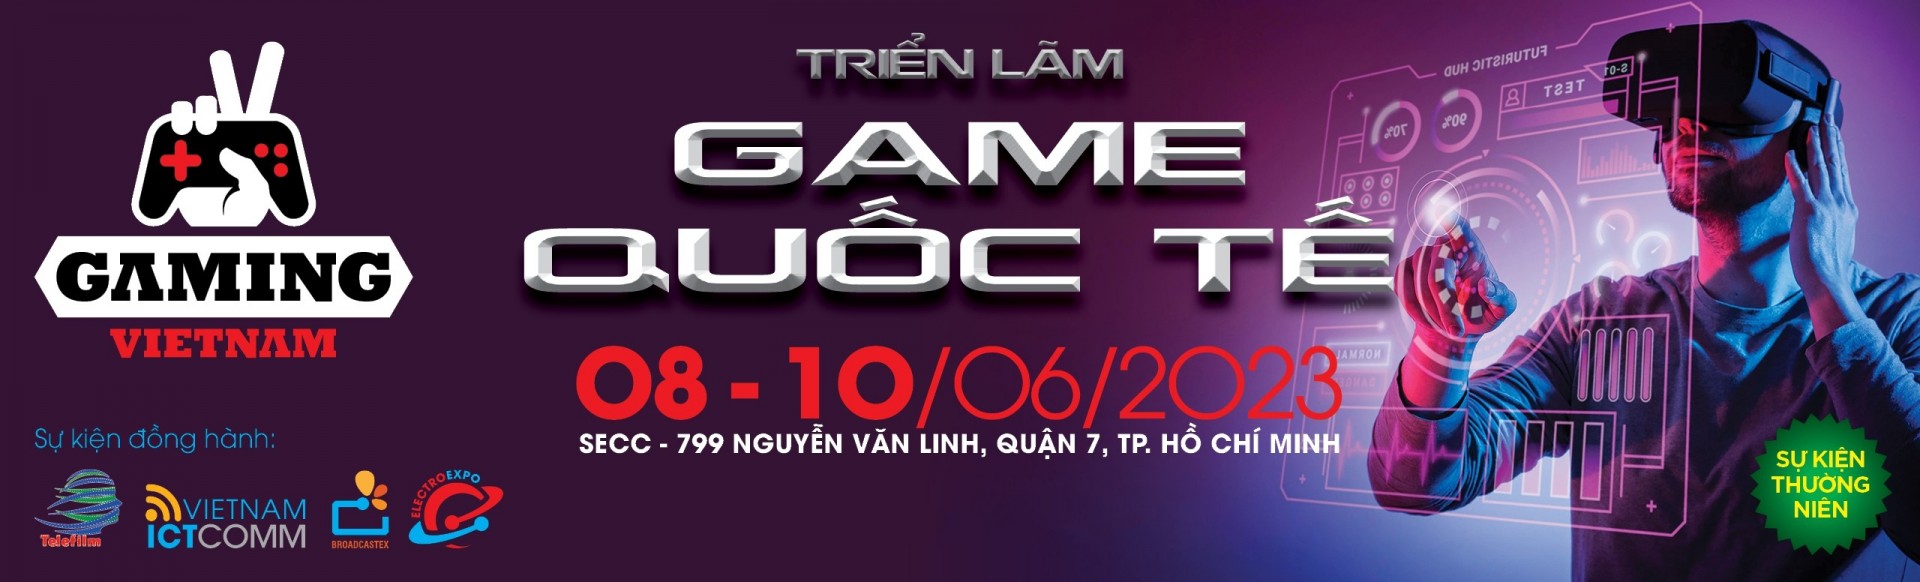 Gaming Vietnam 2023 - Triển lãm Game Quốc tế tại Việt Nam